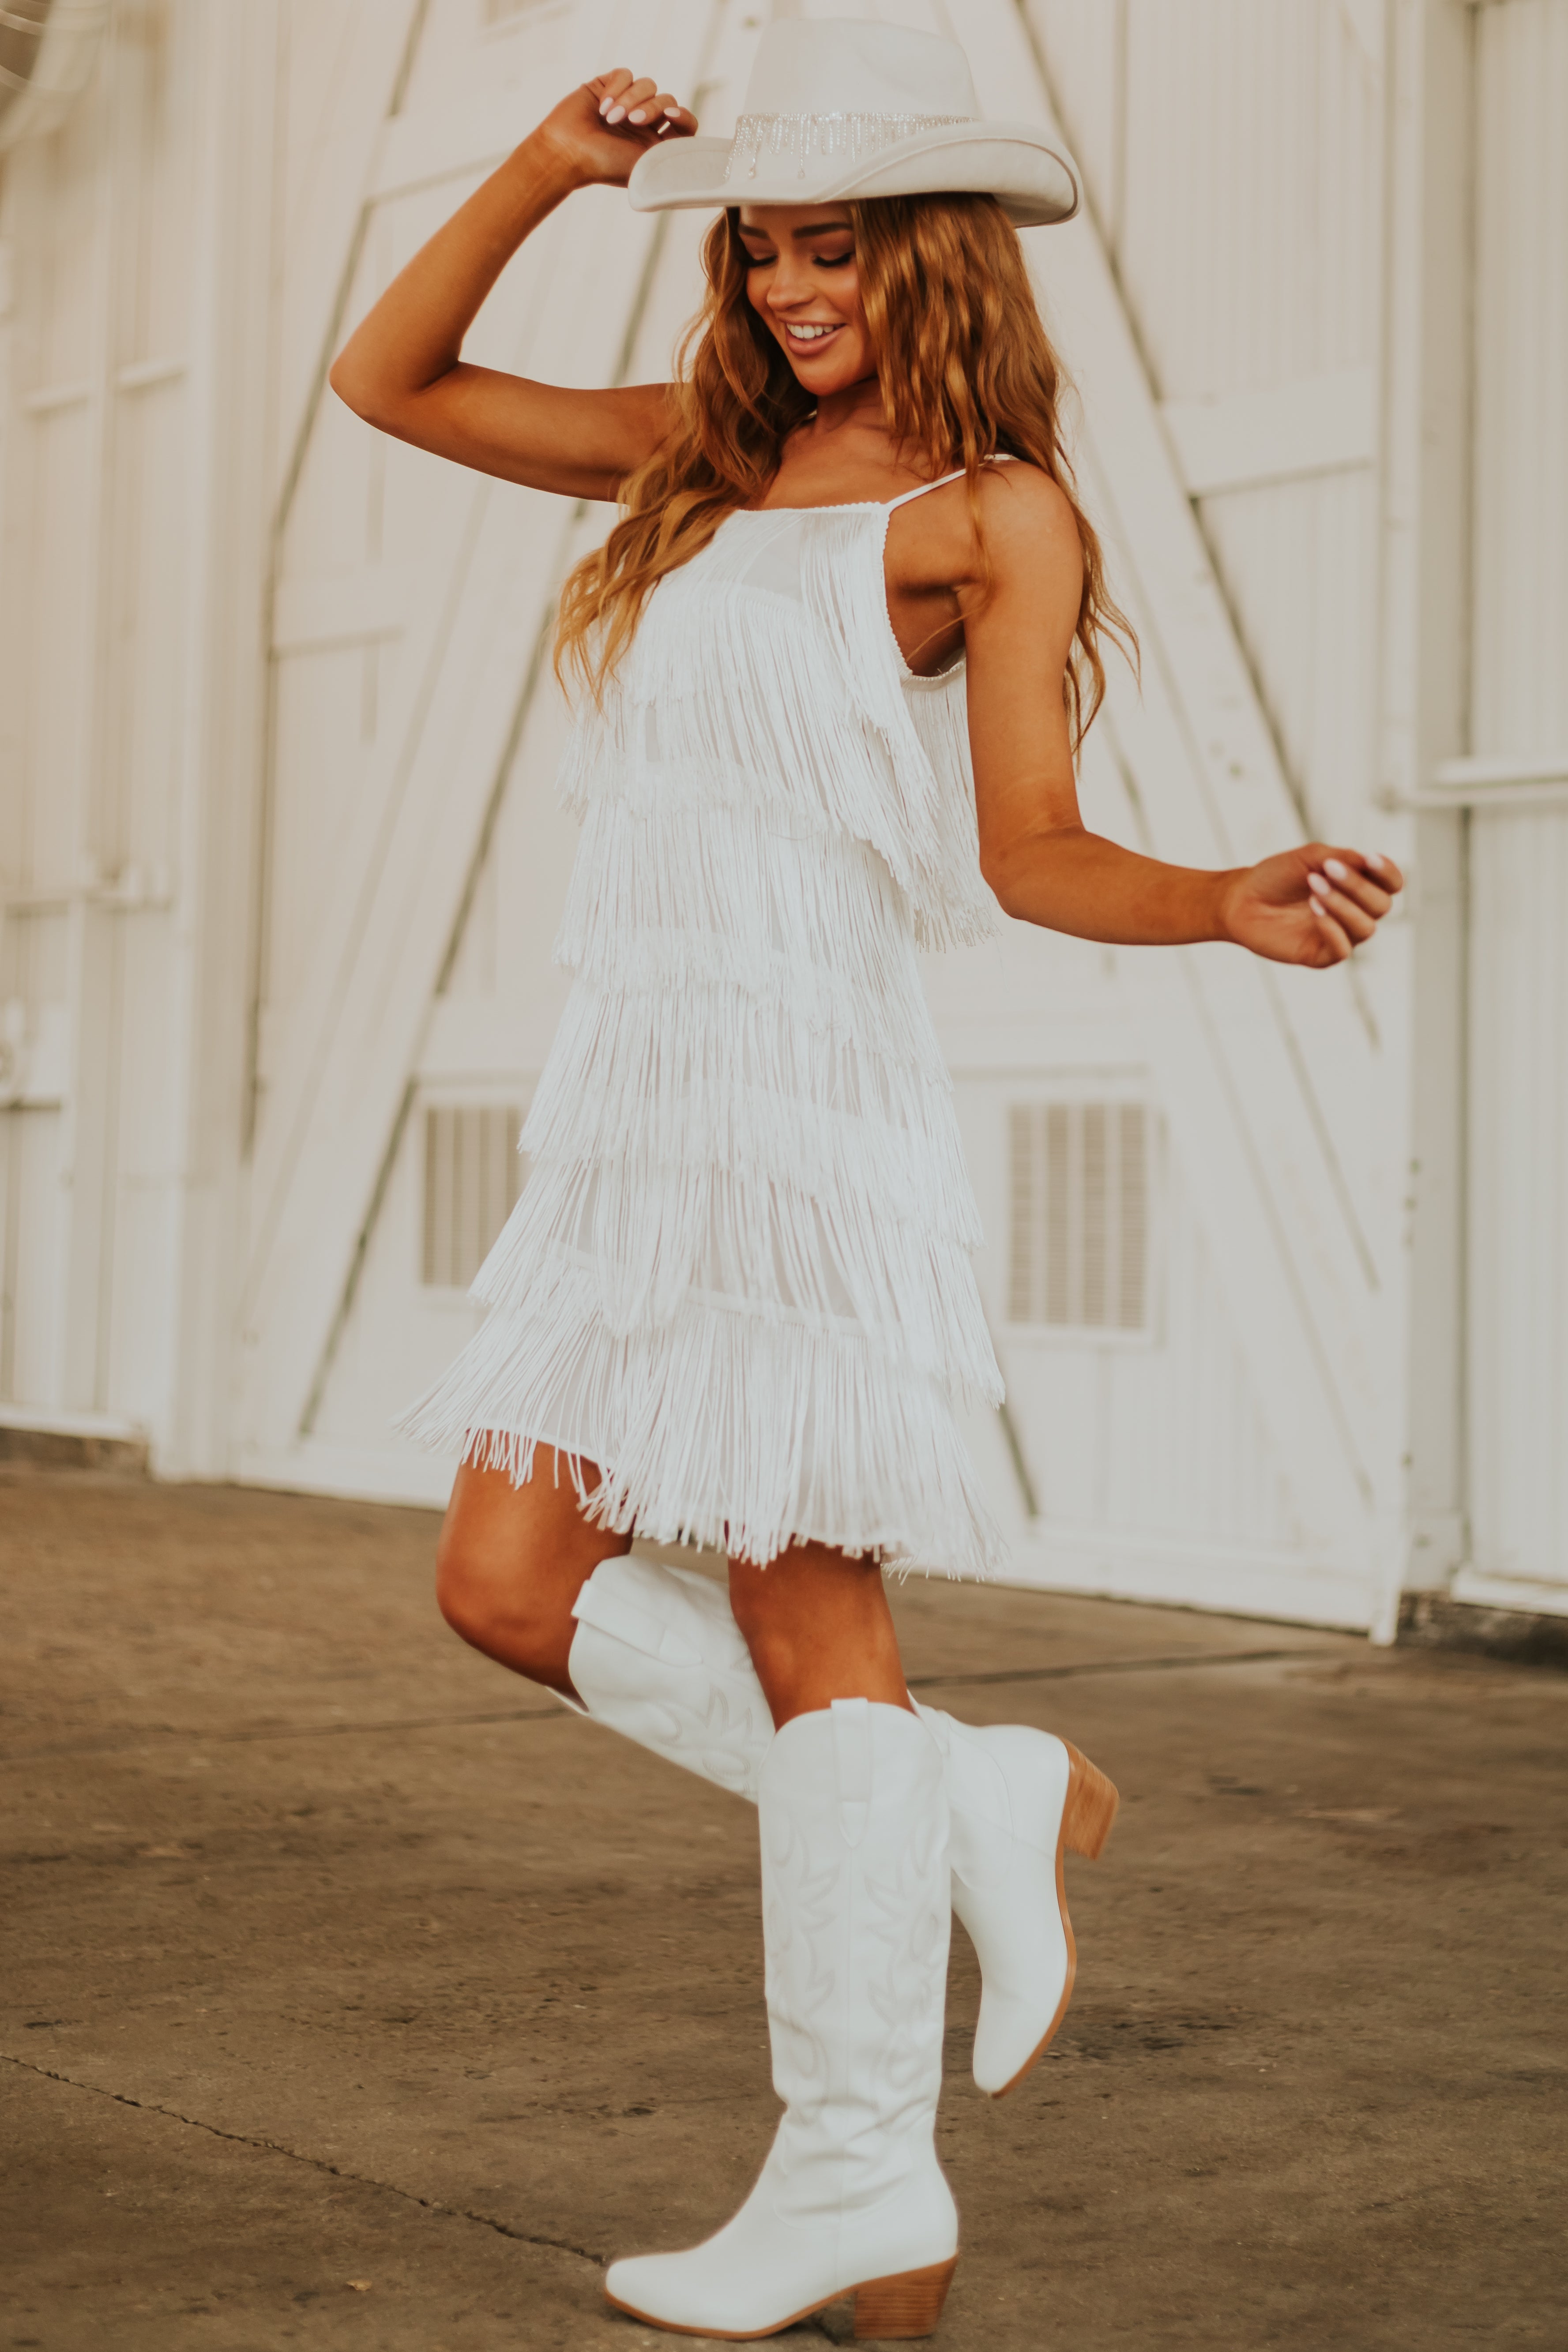 Women's White Layered Fringe Sleeveless Short Dress - Size S